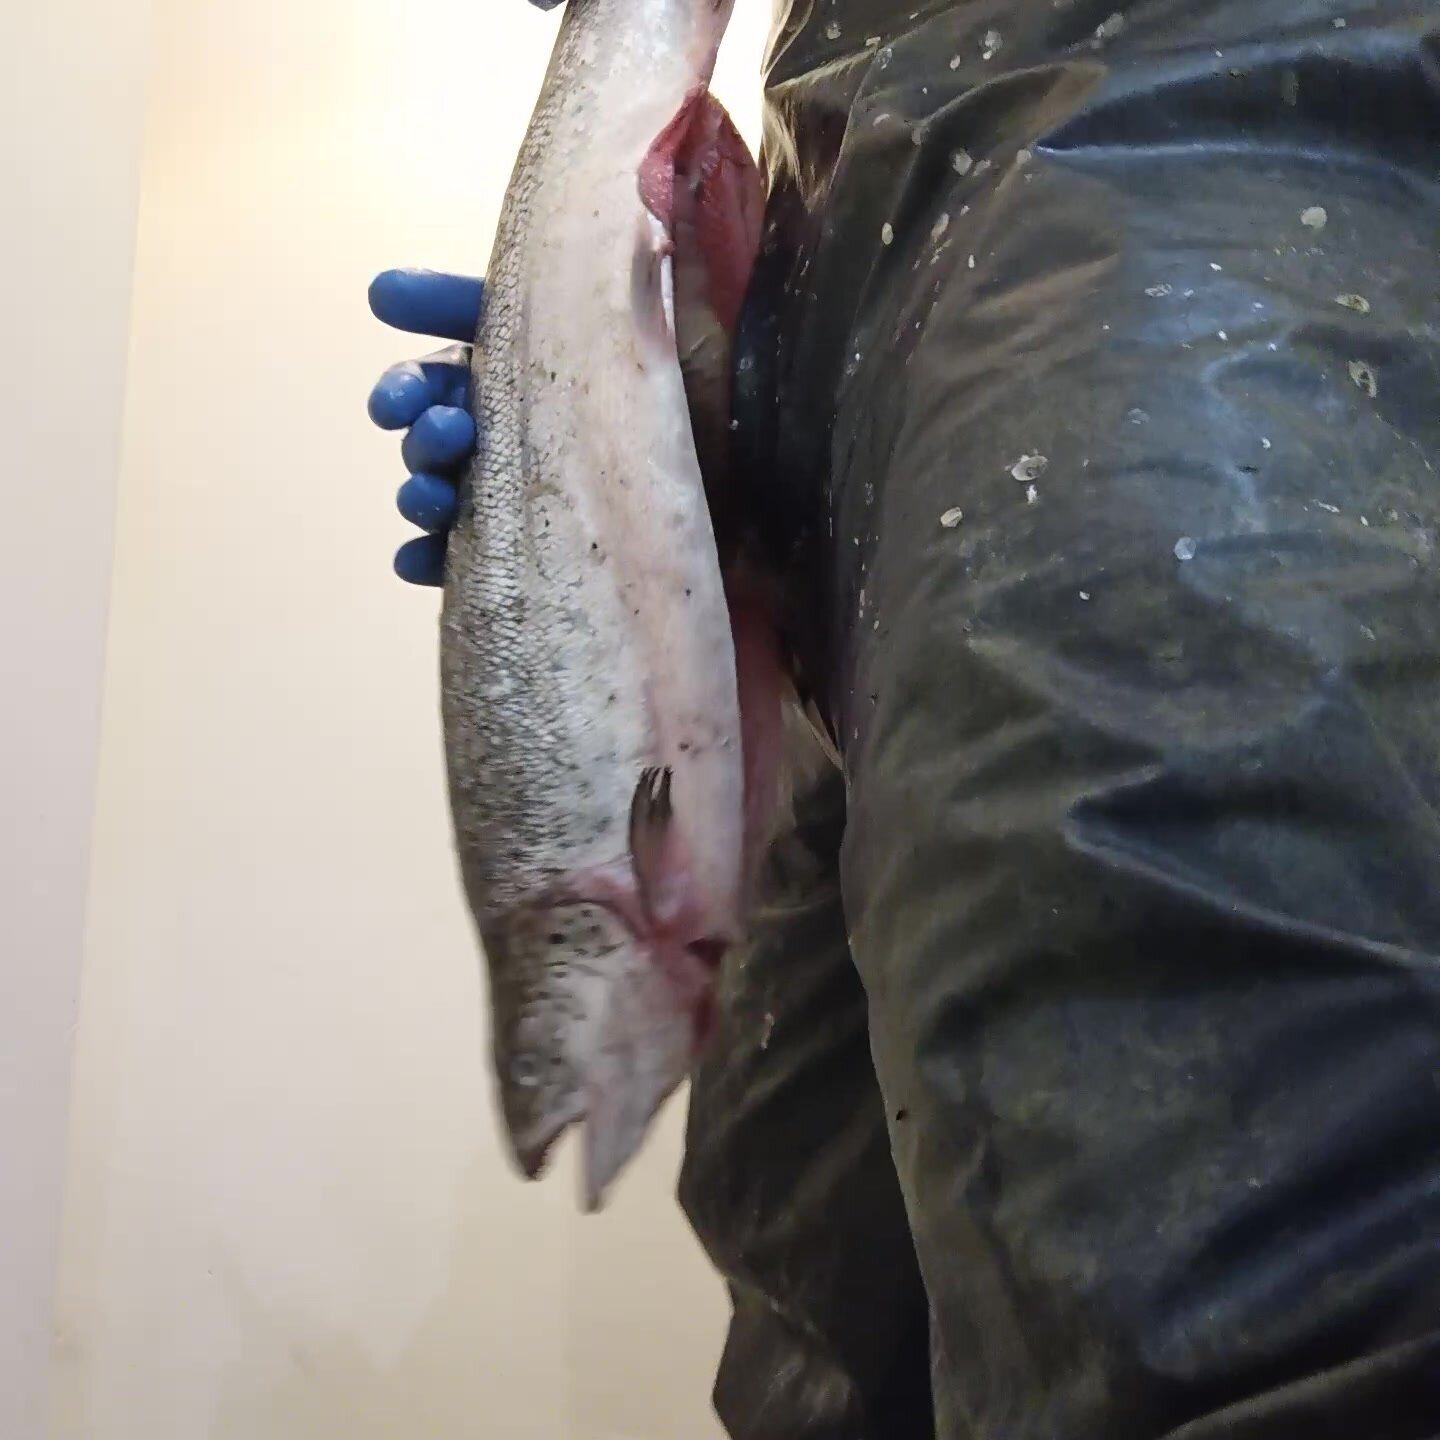 Guy fucks fish